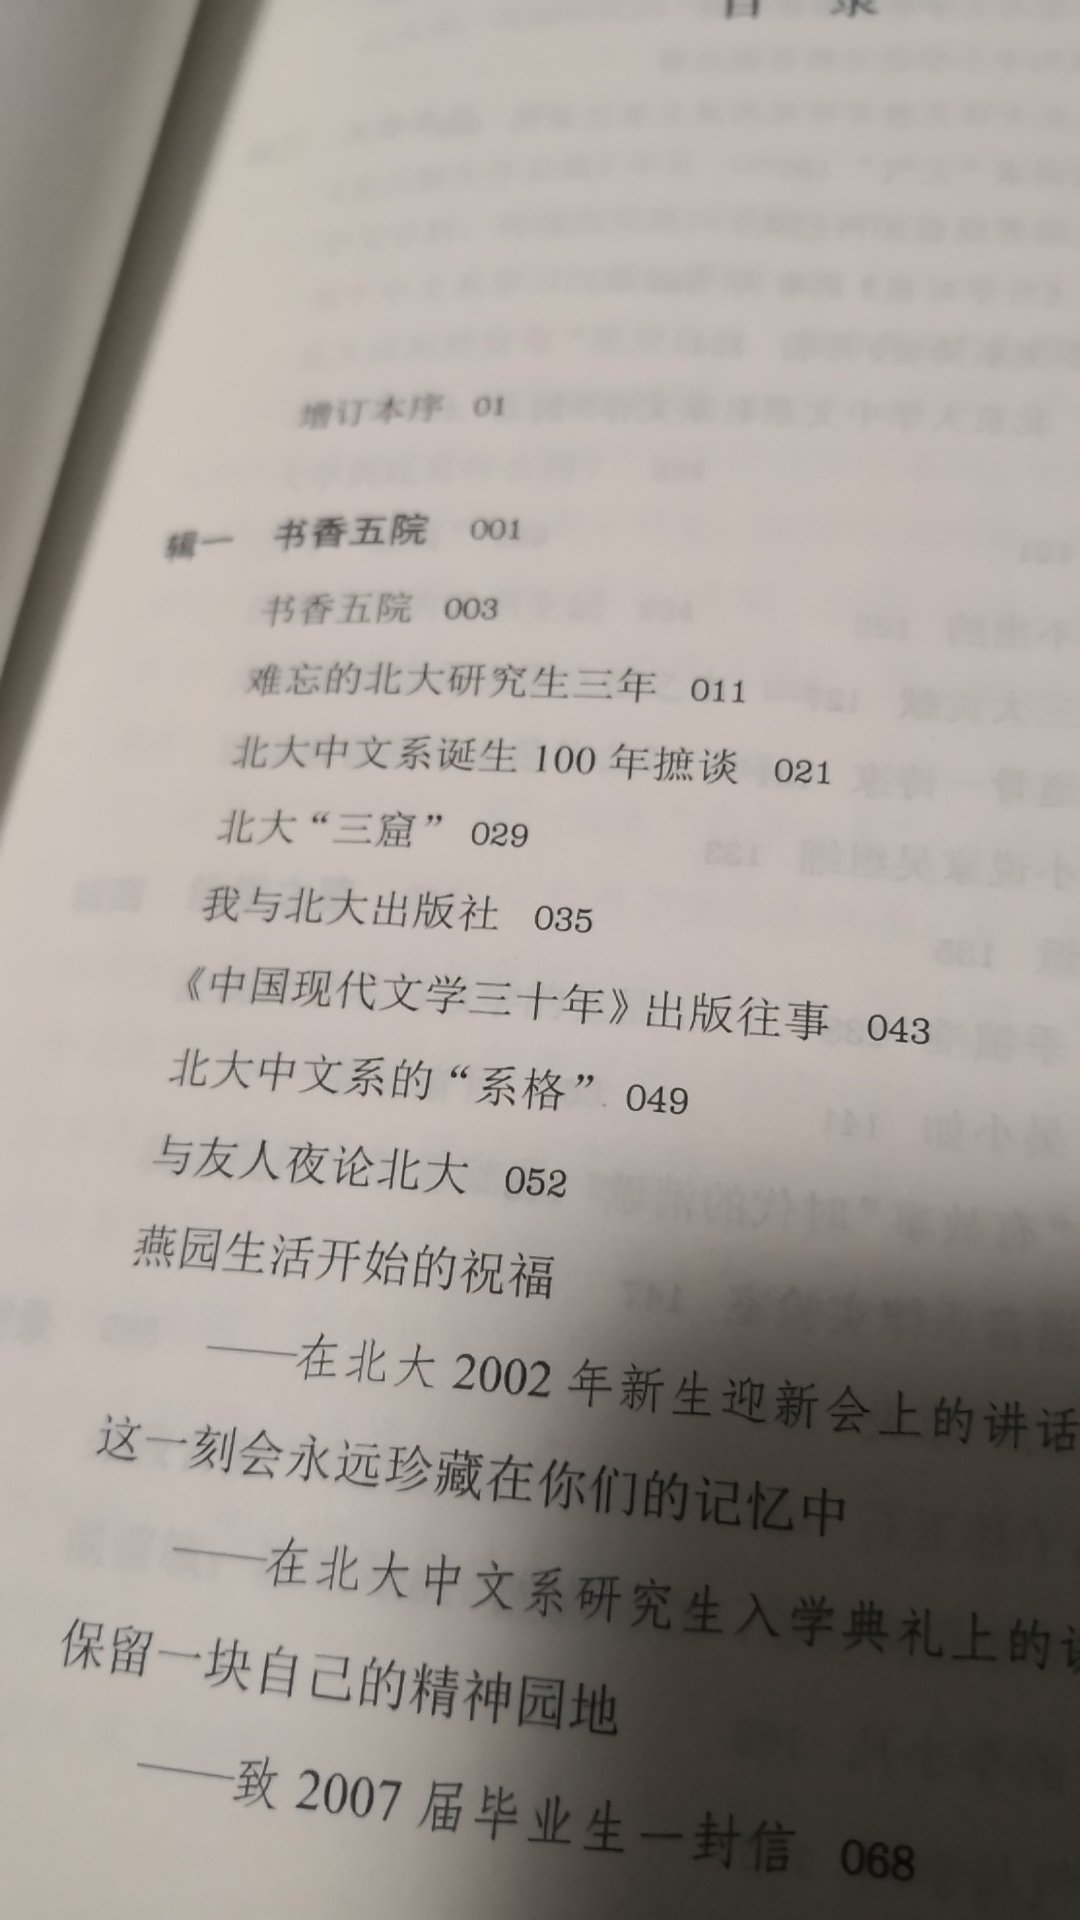 这是笫一次买温先生的书，从中可以，了解北大中文系的人与事，看出北大中文系学术面貌之一二。